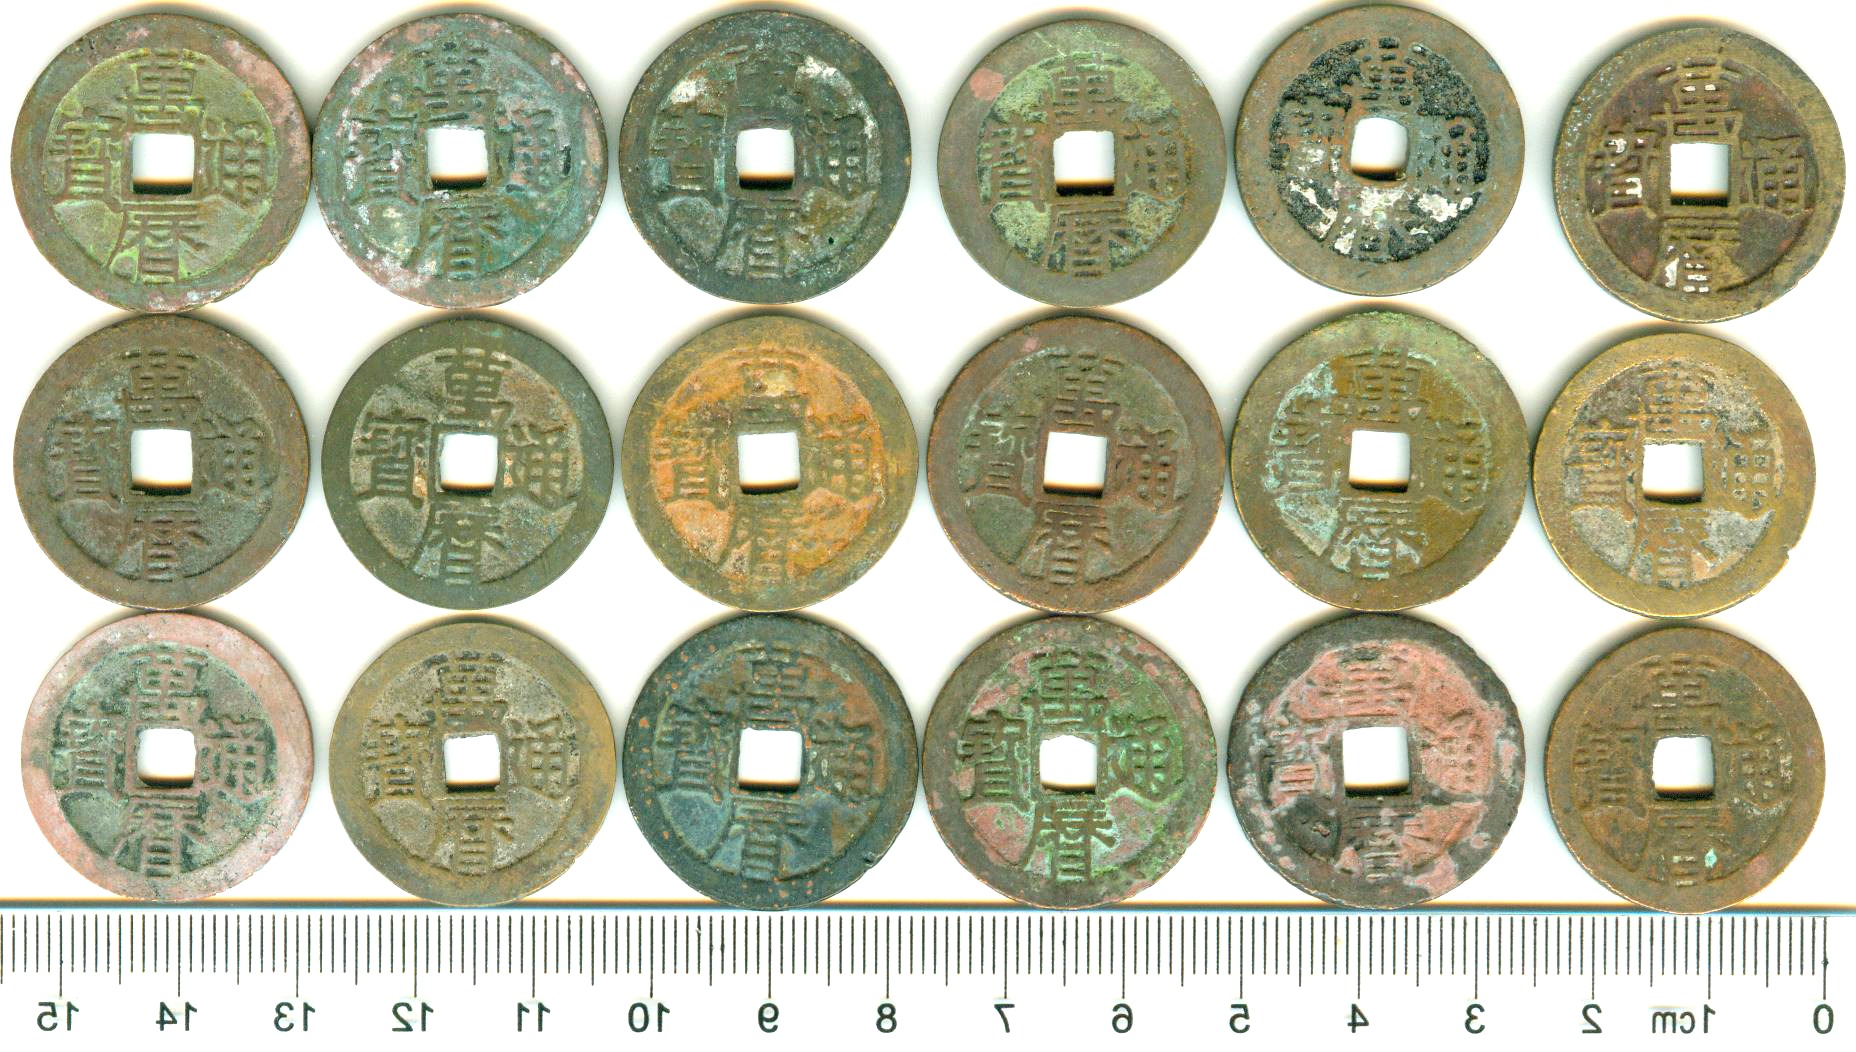 K3520, Wan-Li Tong-Bao Coins 20 Pcs Wholesale, China Ming Dynasty AD 1500's